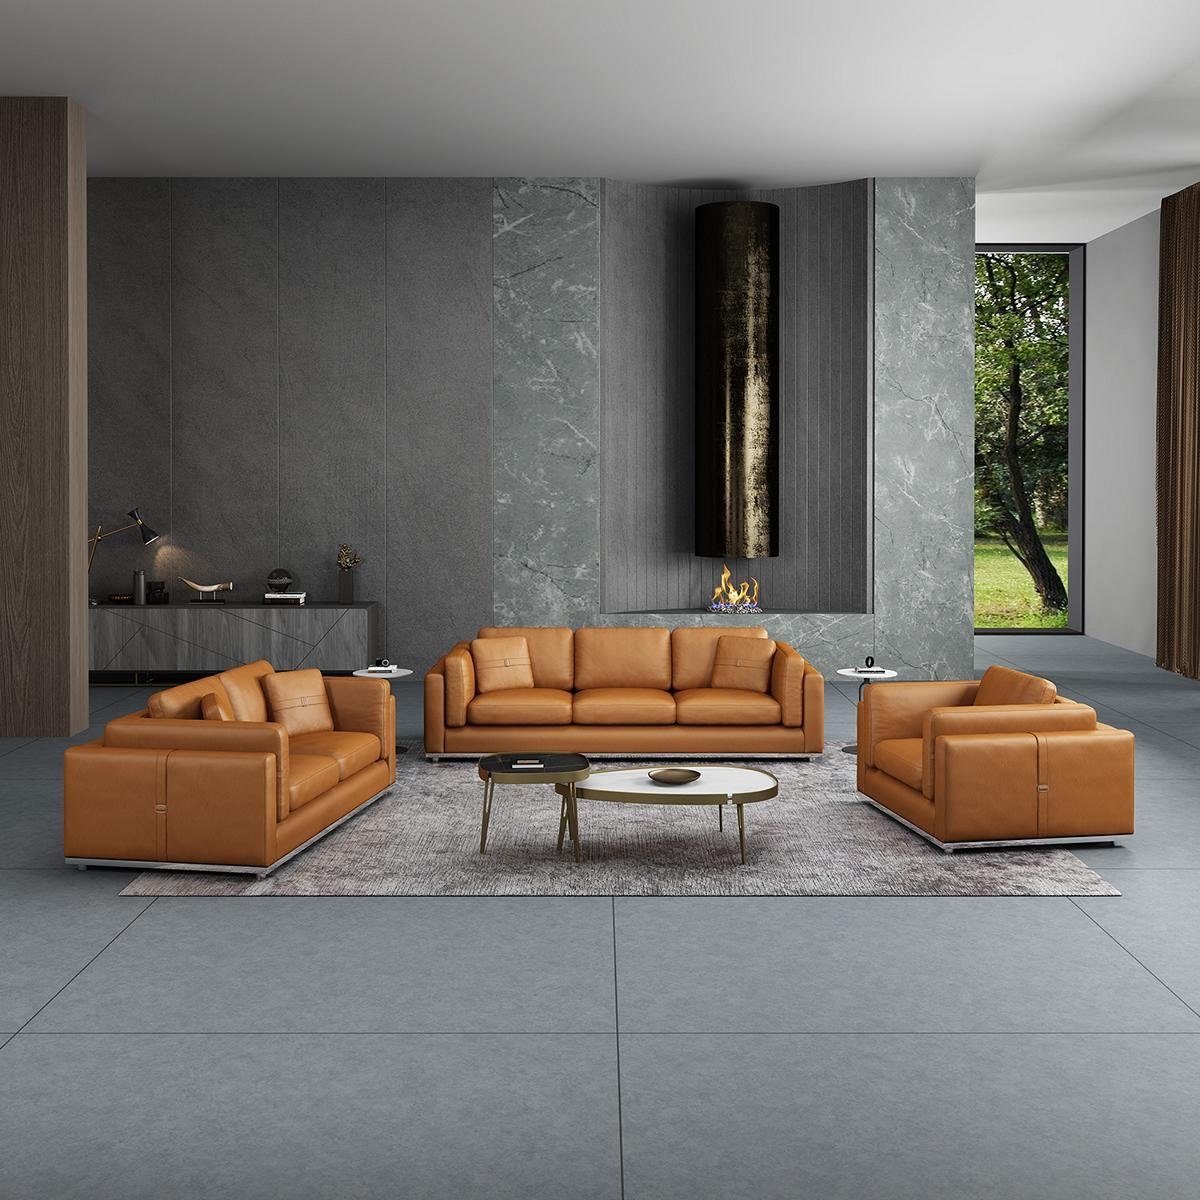 JVmoebel Wohnzimmer-Set, Sofagarnitur 3 1 Sitzer Design Couch Polster Sofas Modern Garnitur Braun